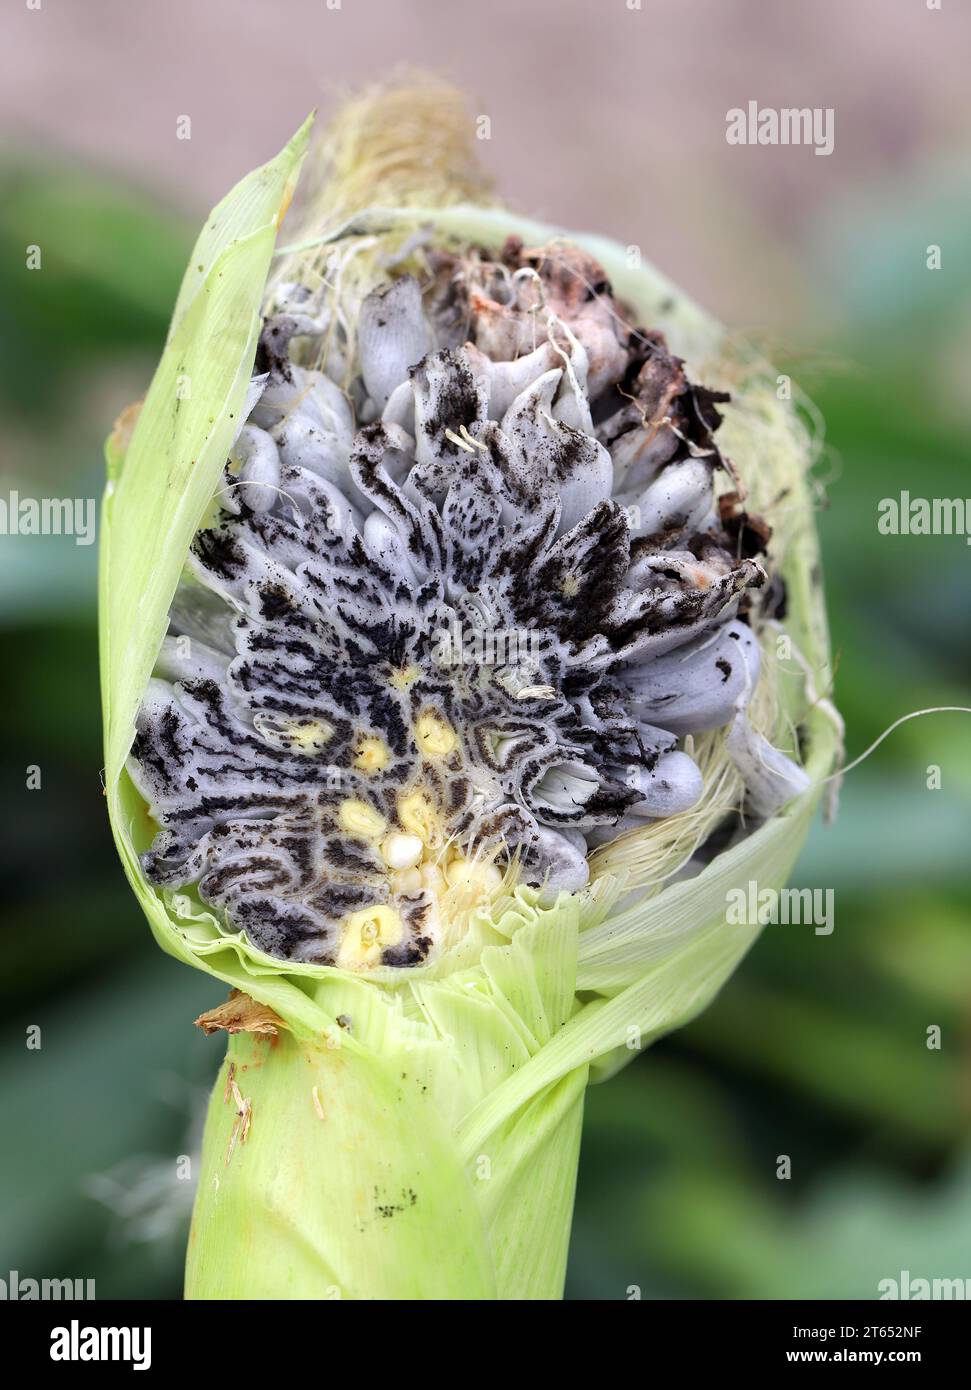 Maisschimmel (Ustilago maydis) ist ein Pilzparasit von Mais. Ist ein essbarer Pilz, der in Mexiko als Huitlacoche bekannt ist. Querschnitt durch eine. Stockfoto